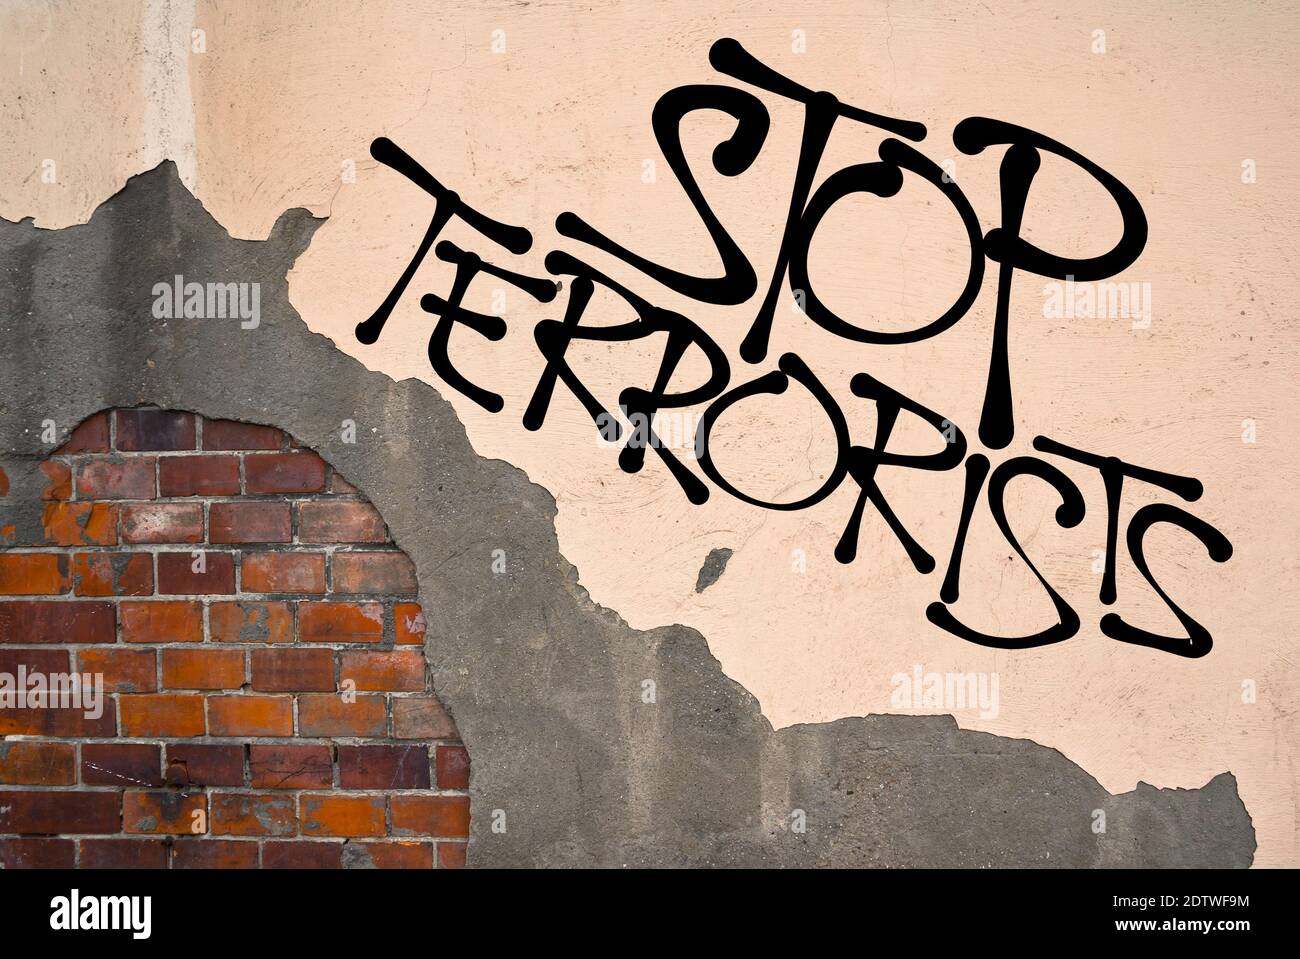 Arrêter les terroristes - graffiti manuscrit pulvérisé sur le mur, esthétique anarchiste - appel à établir la sécurité et la prévention pour empêcher le terrorisme an Banque D'Images